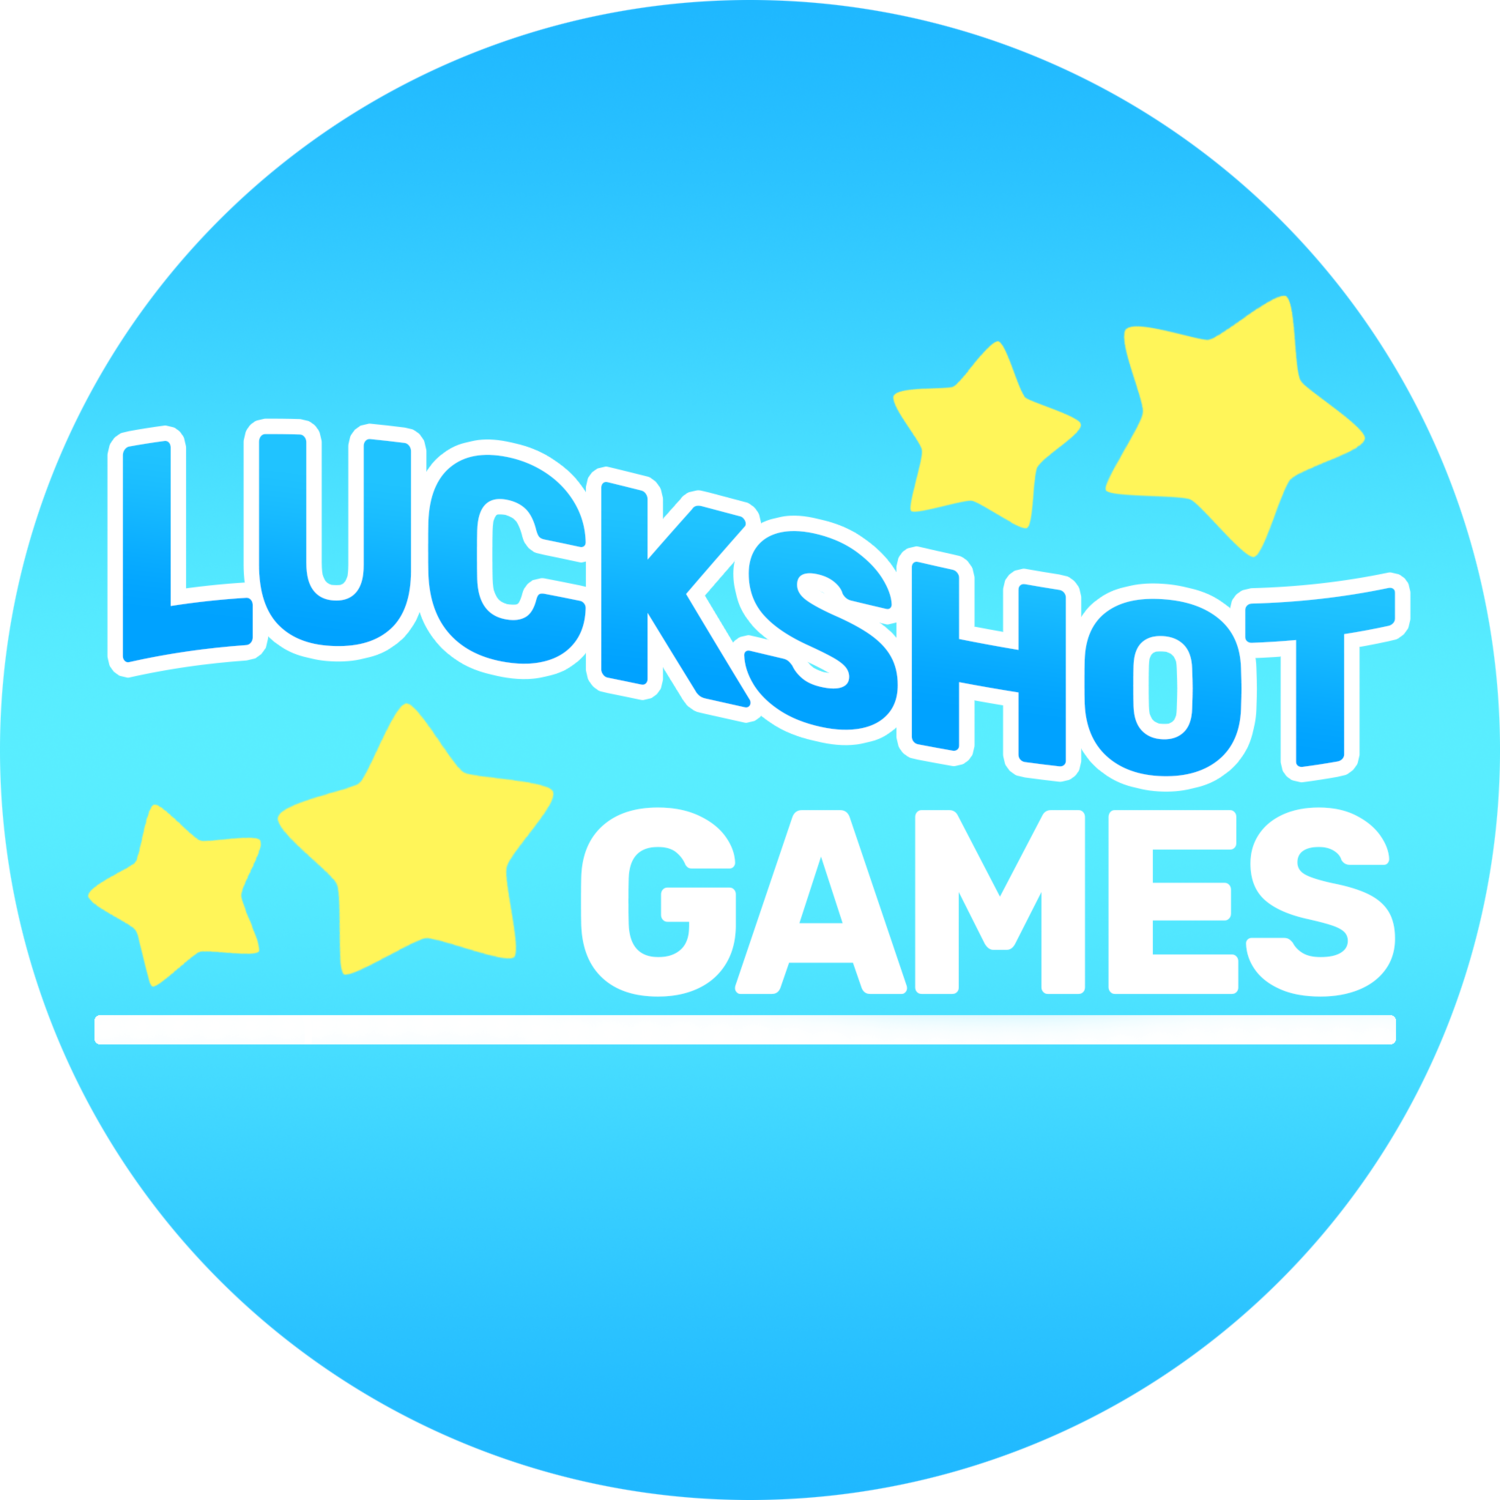 Luckshot Games